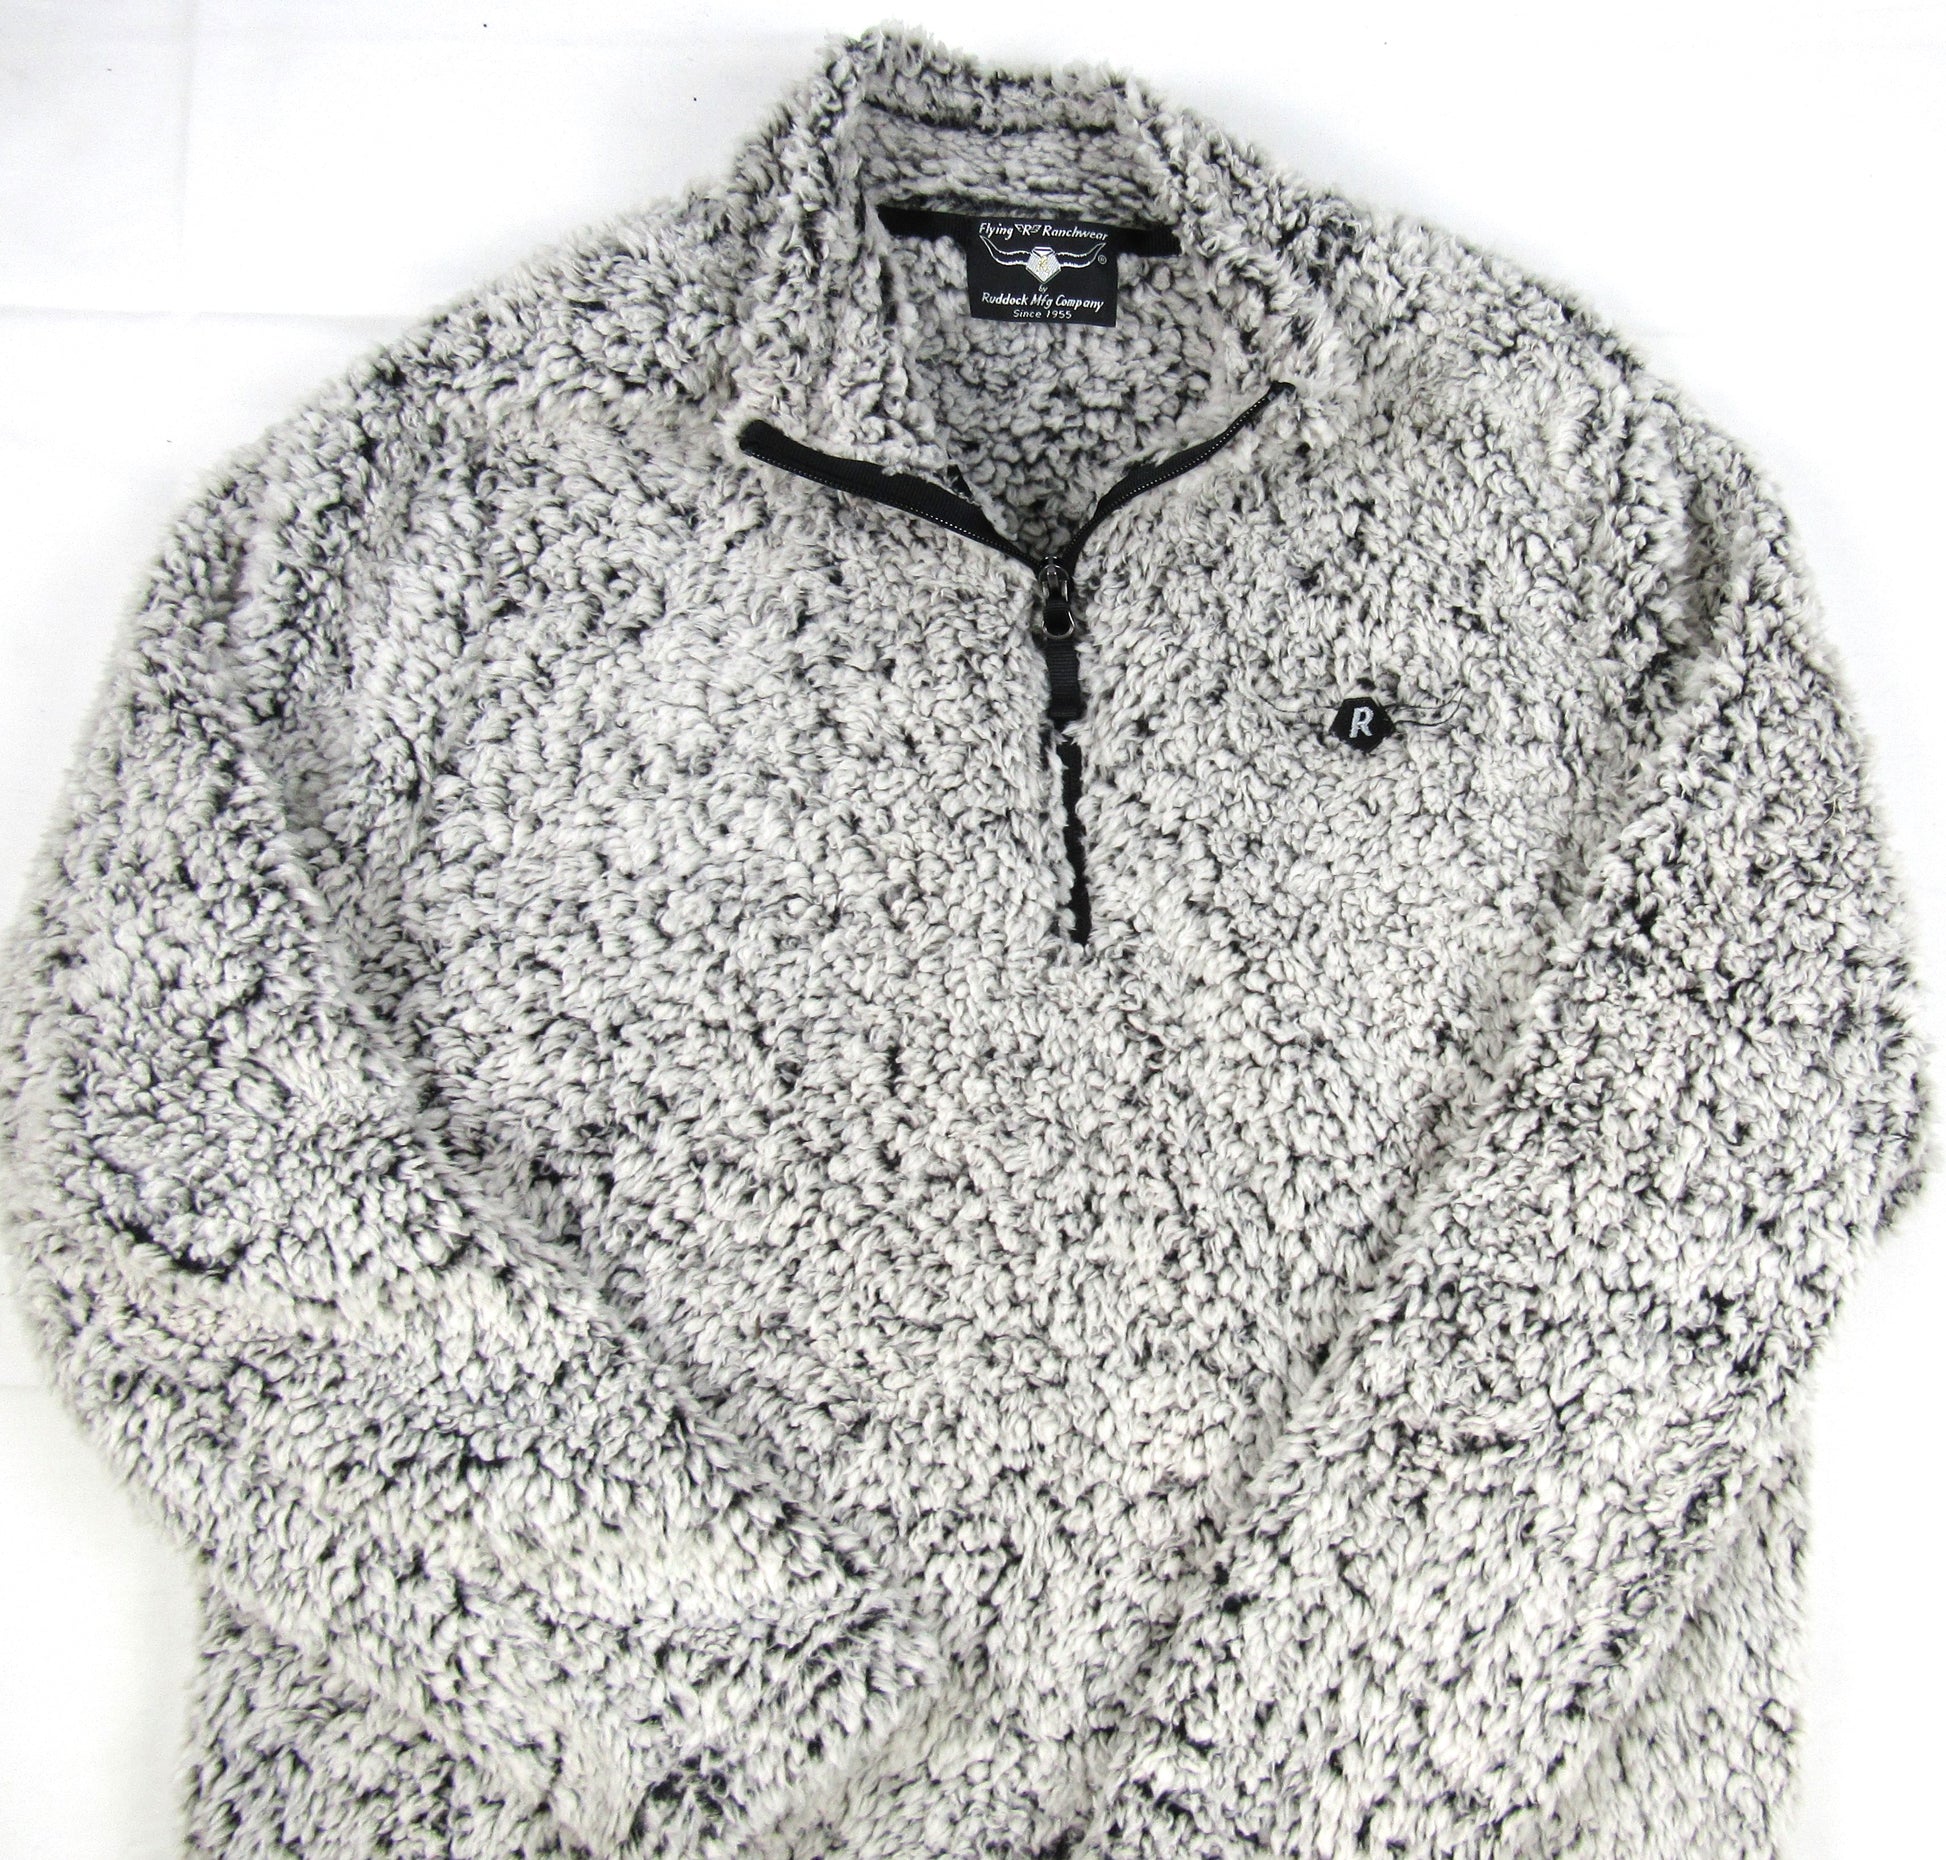 Gray Heather sherpa fleece with 1/4 zipper by Flying R Ranchwear